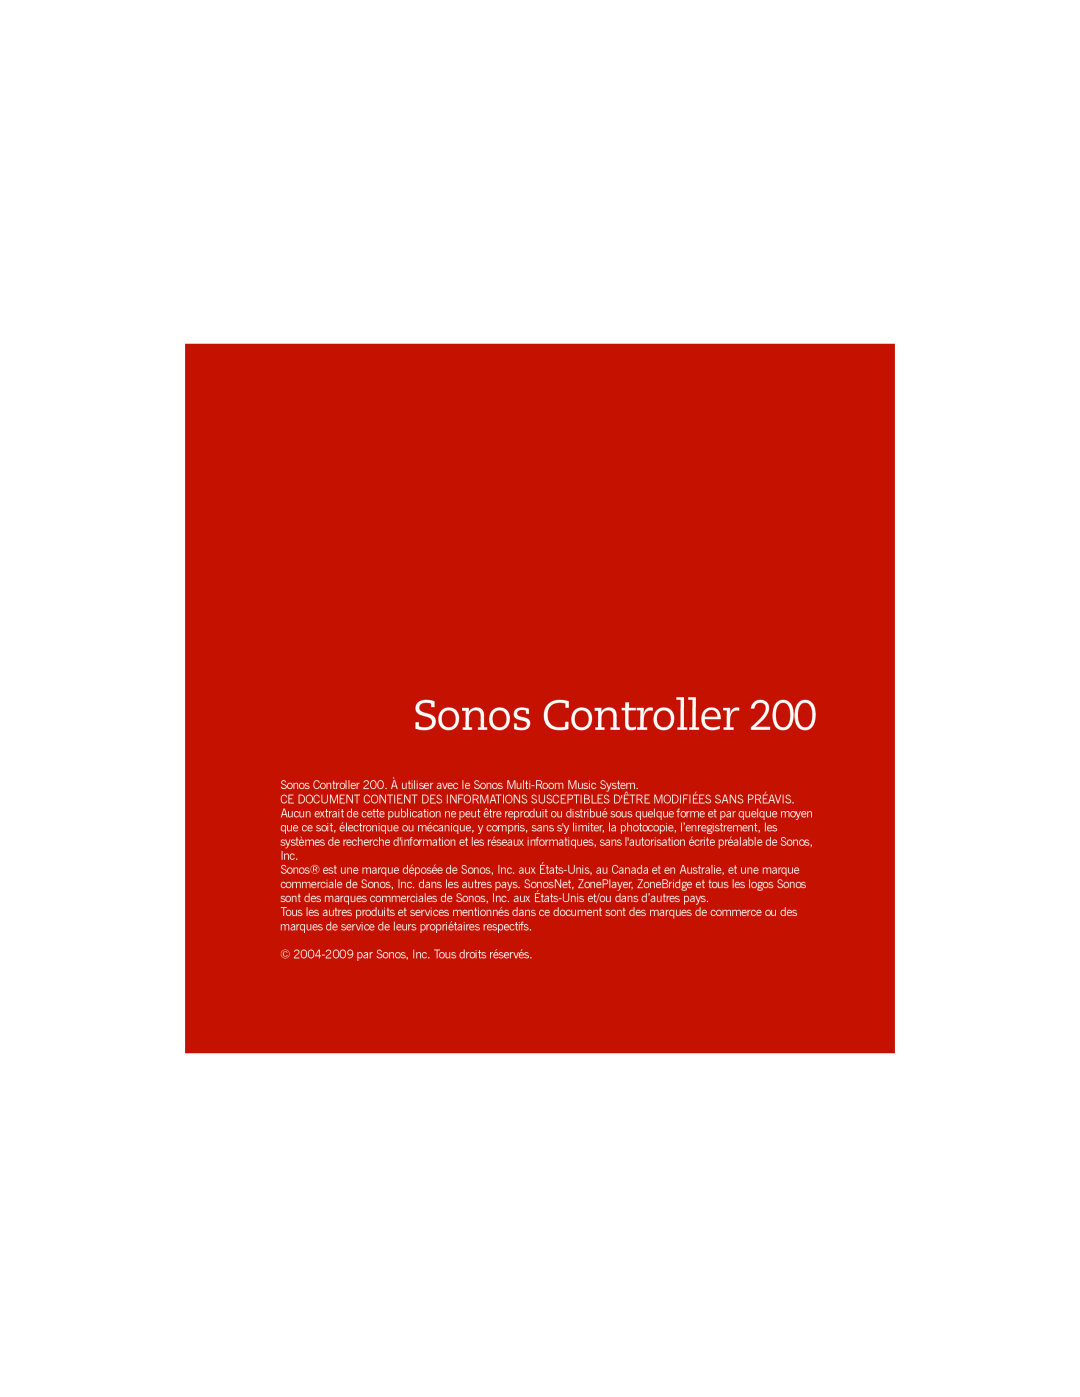 Sonos manual Sonos Controller, 2004-2009par Sonos, Inc. Tous droits réservés 